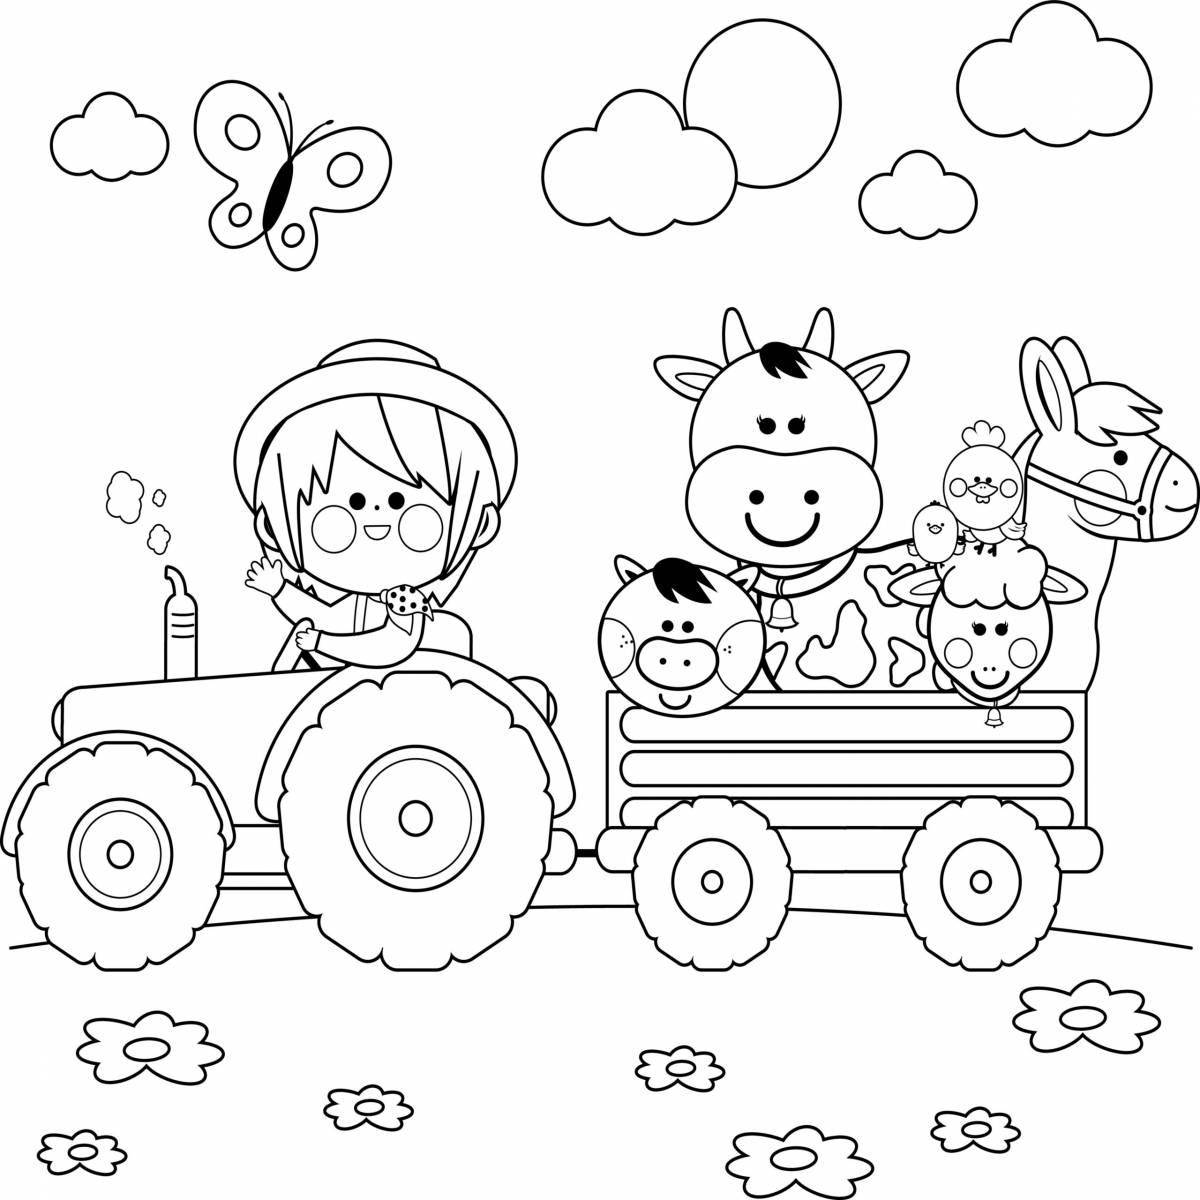 Colored explosive cartoon tractors coloring page